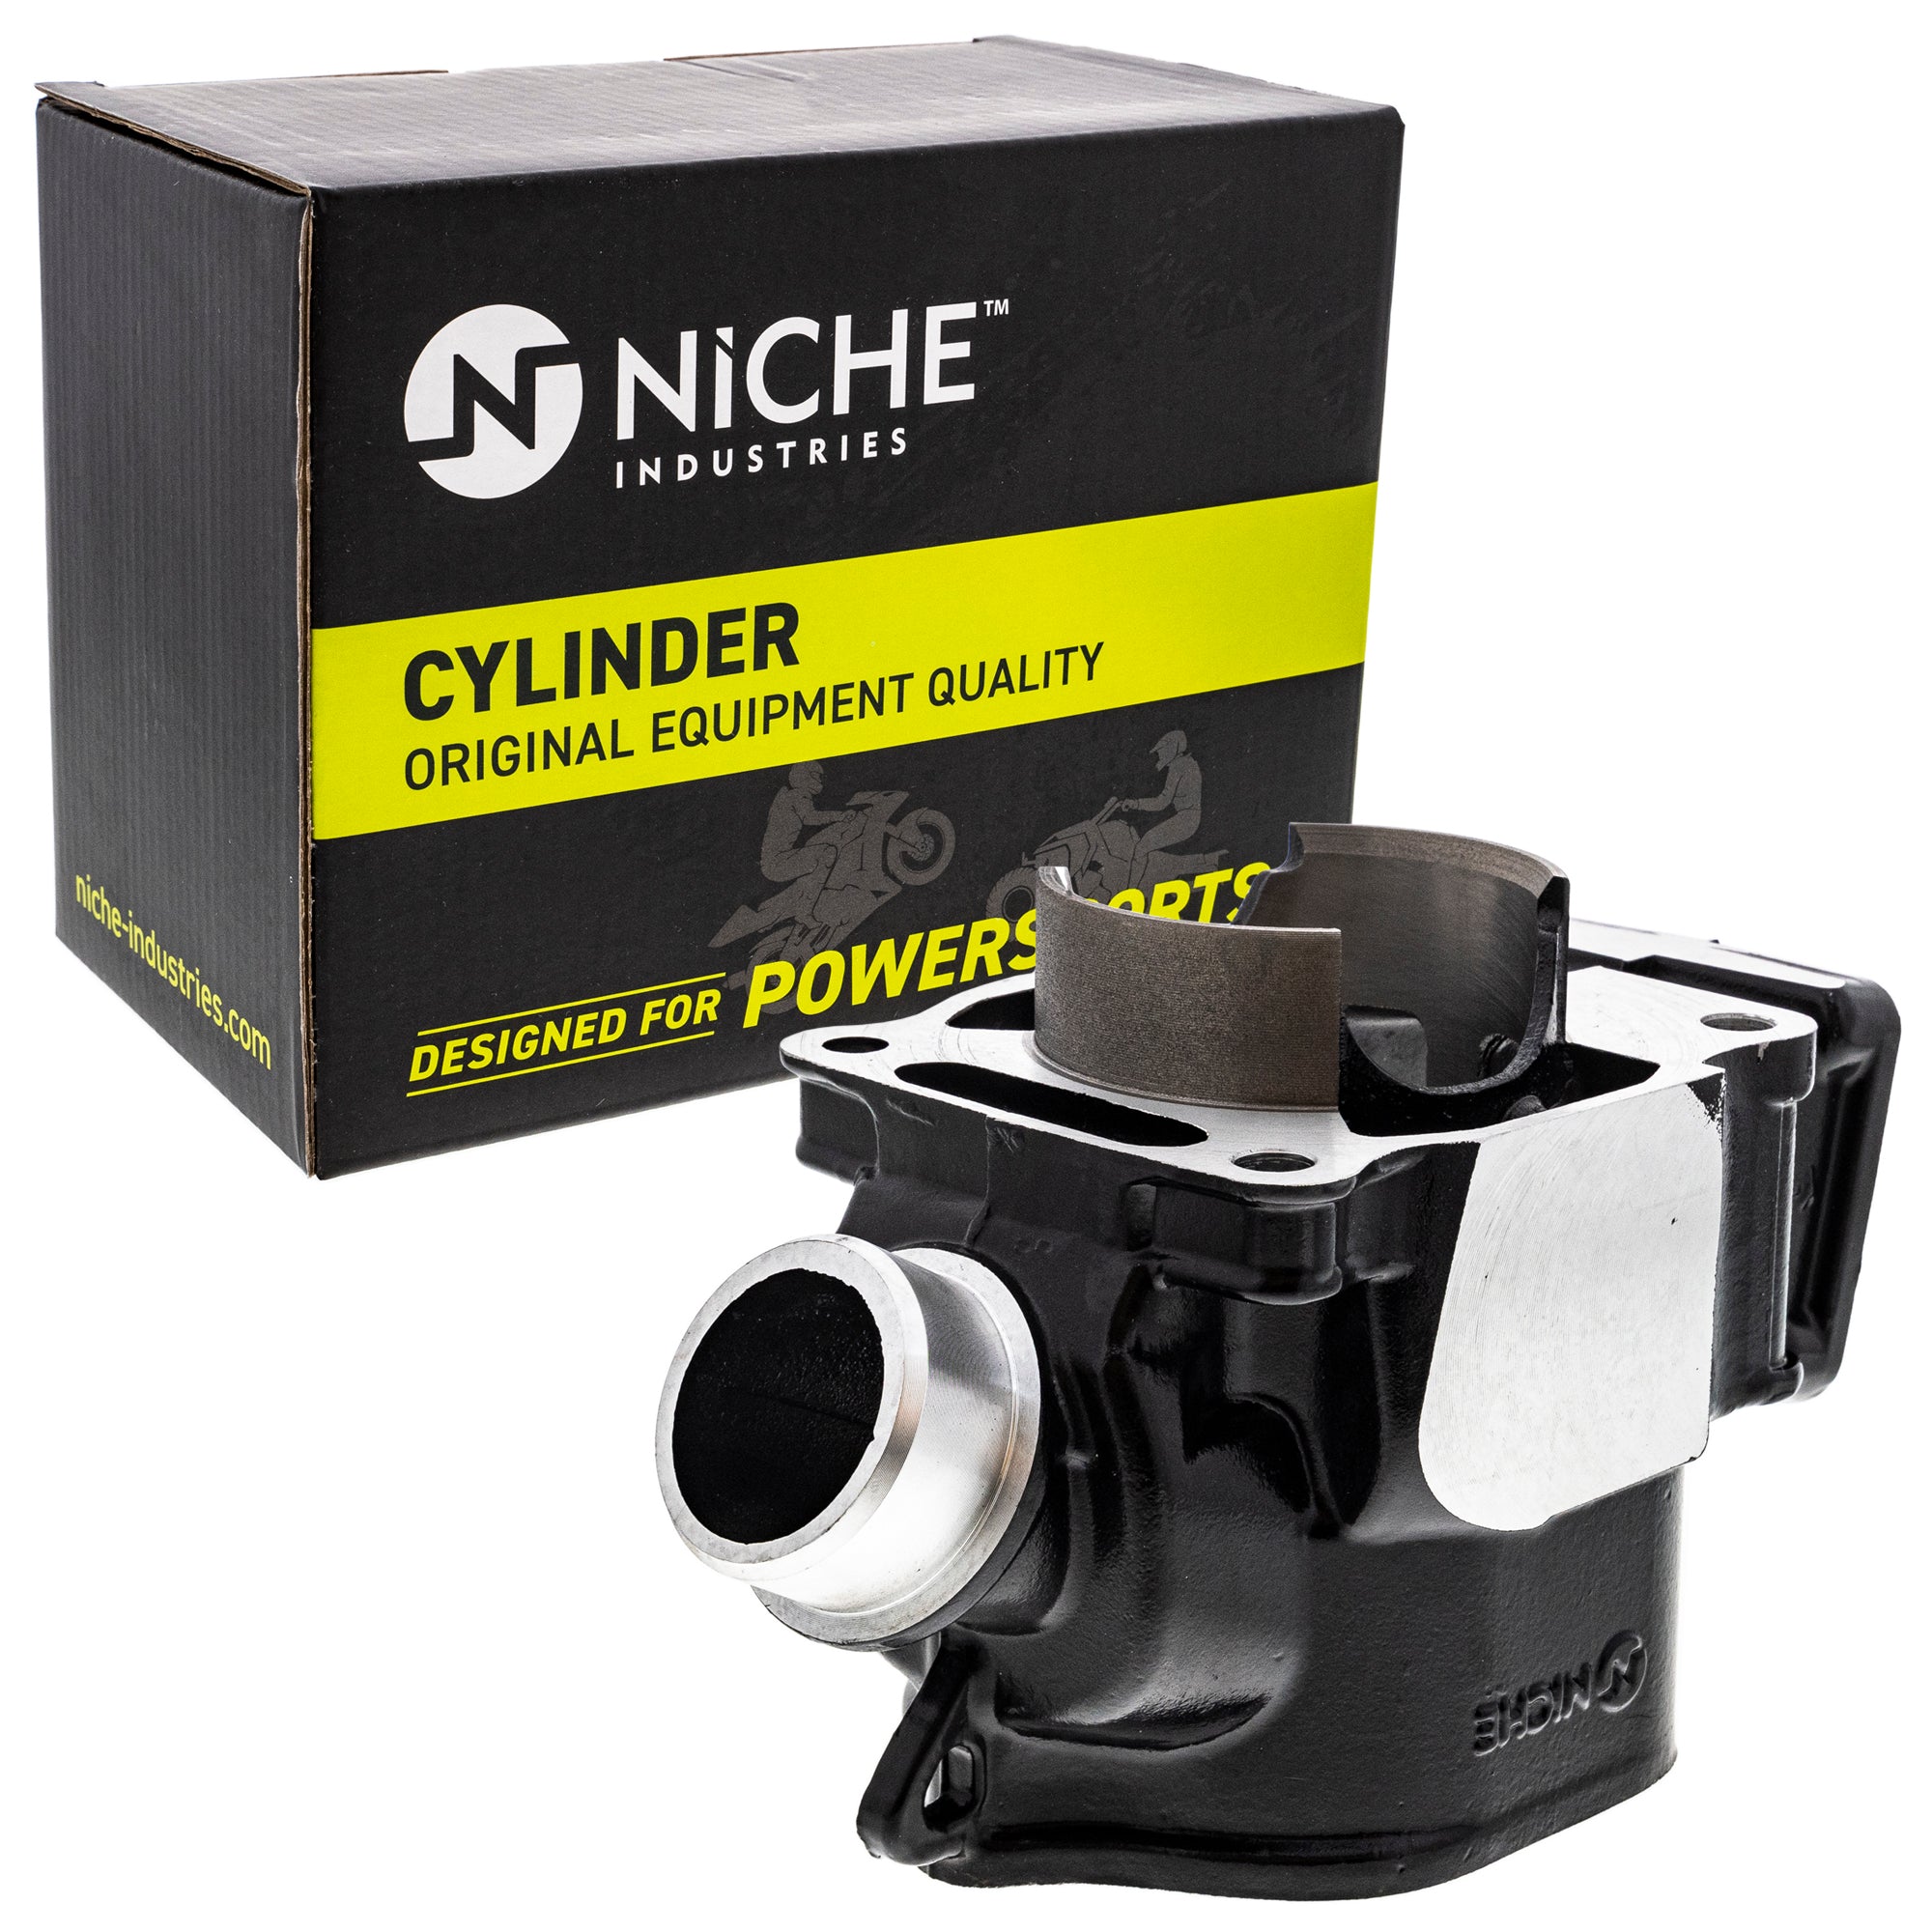 NICHE MK1012549 Cylinder Kit for Banshee